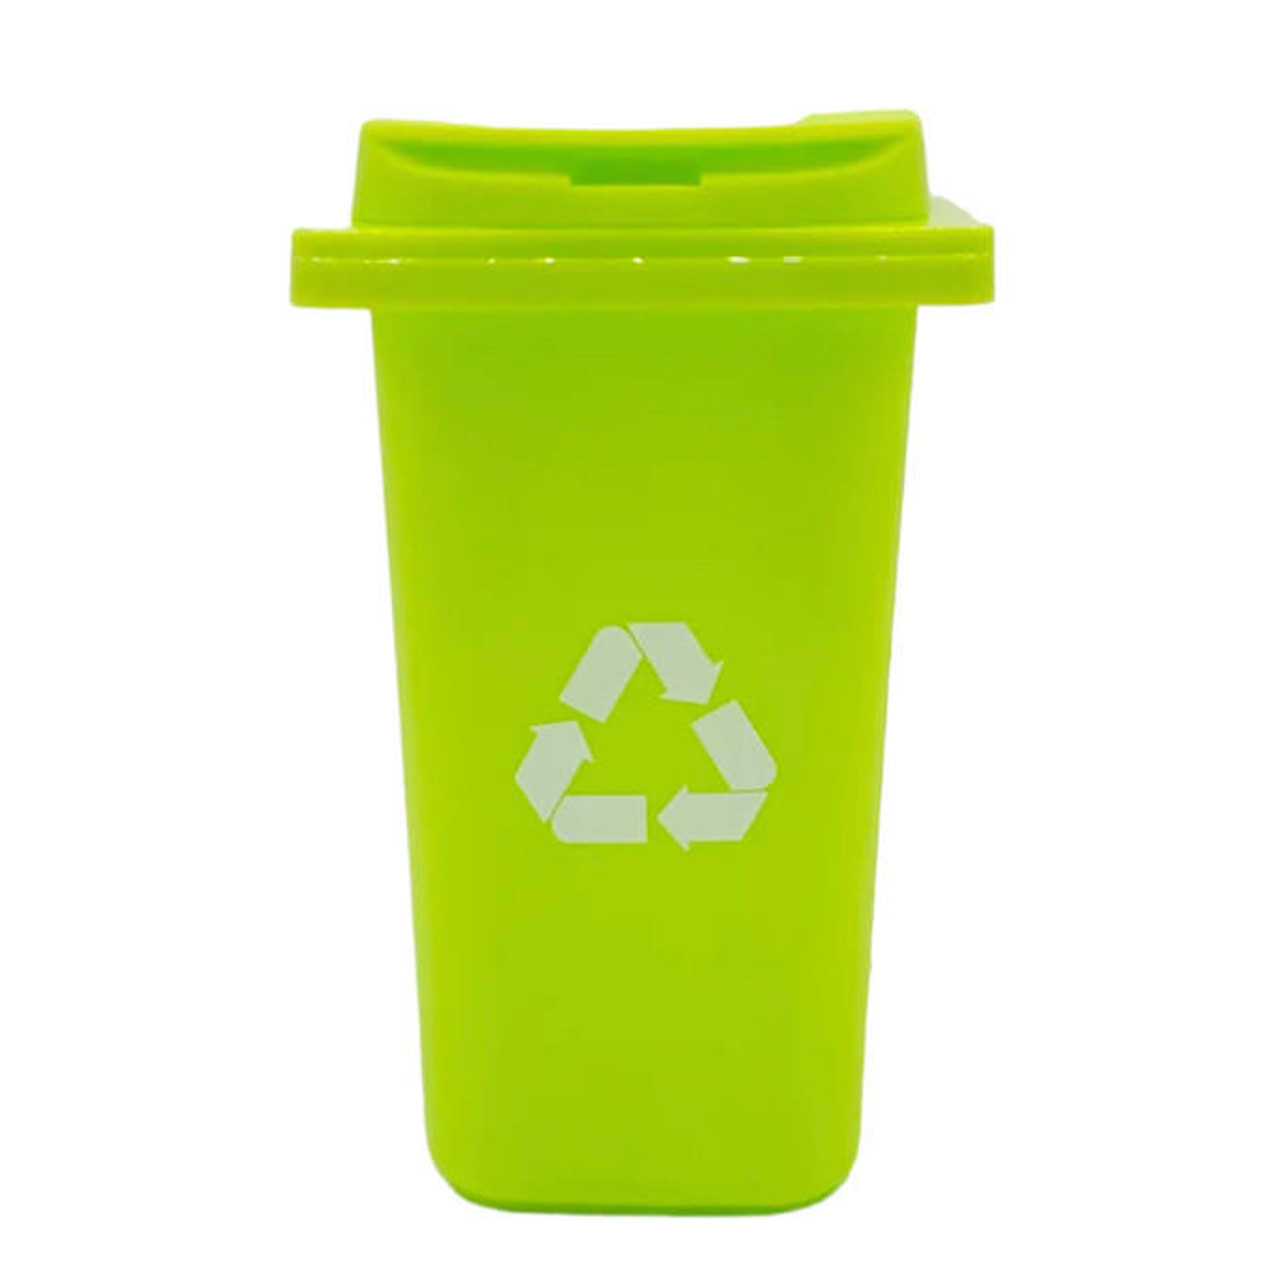 Dab Swab Storage: Mini Trash Bin - Light Green